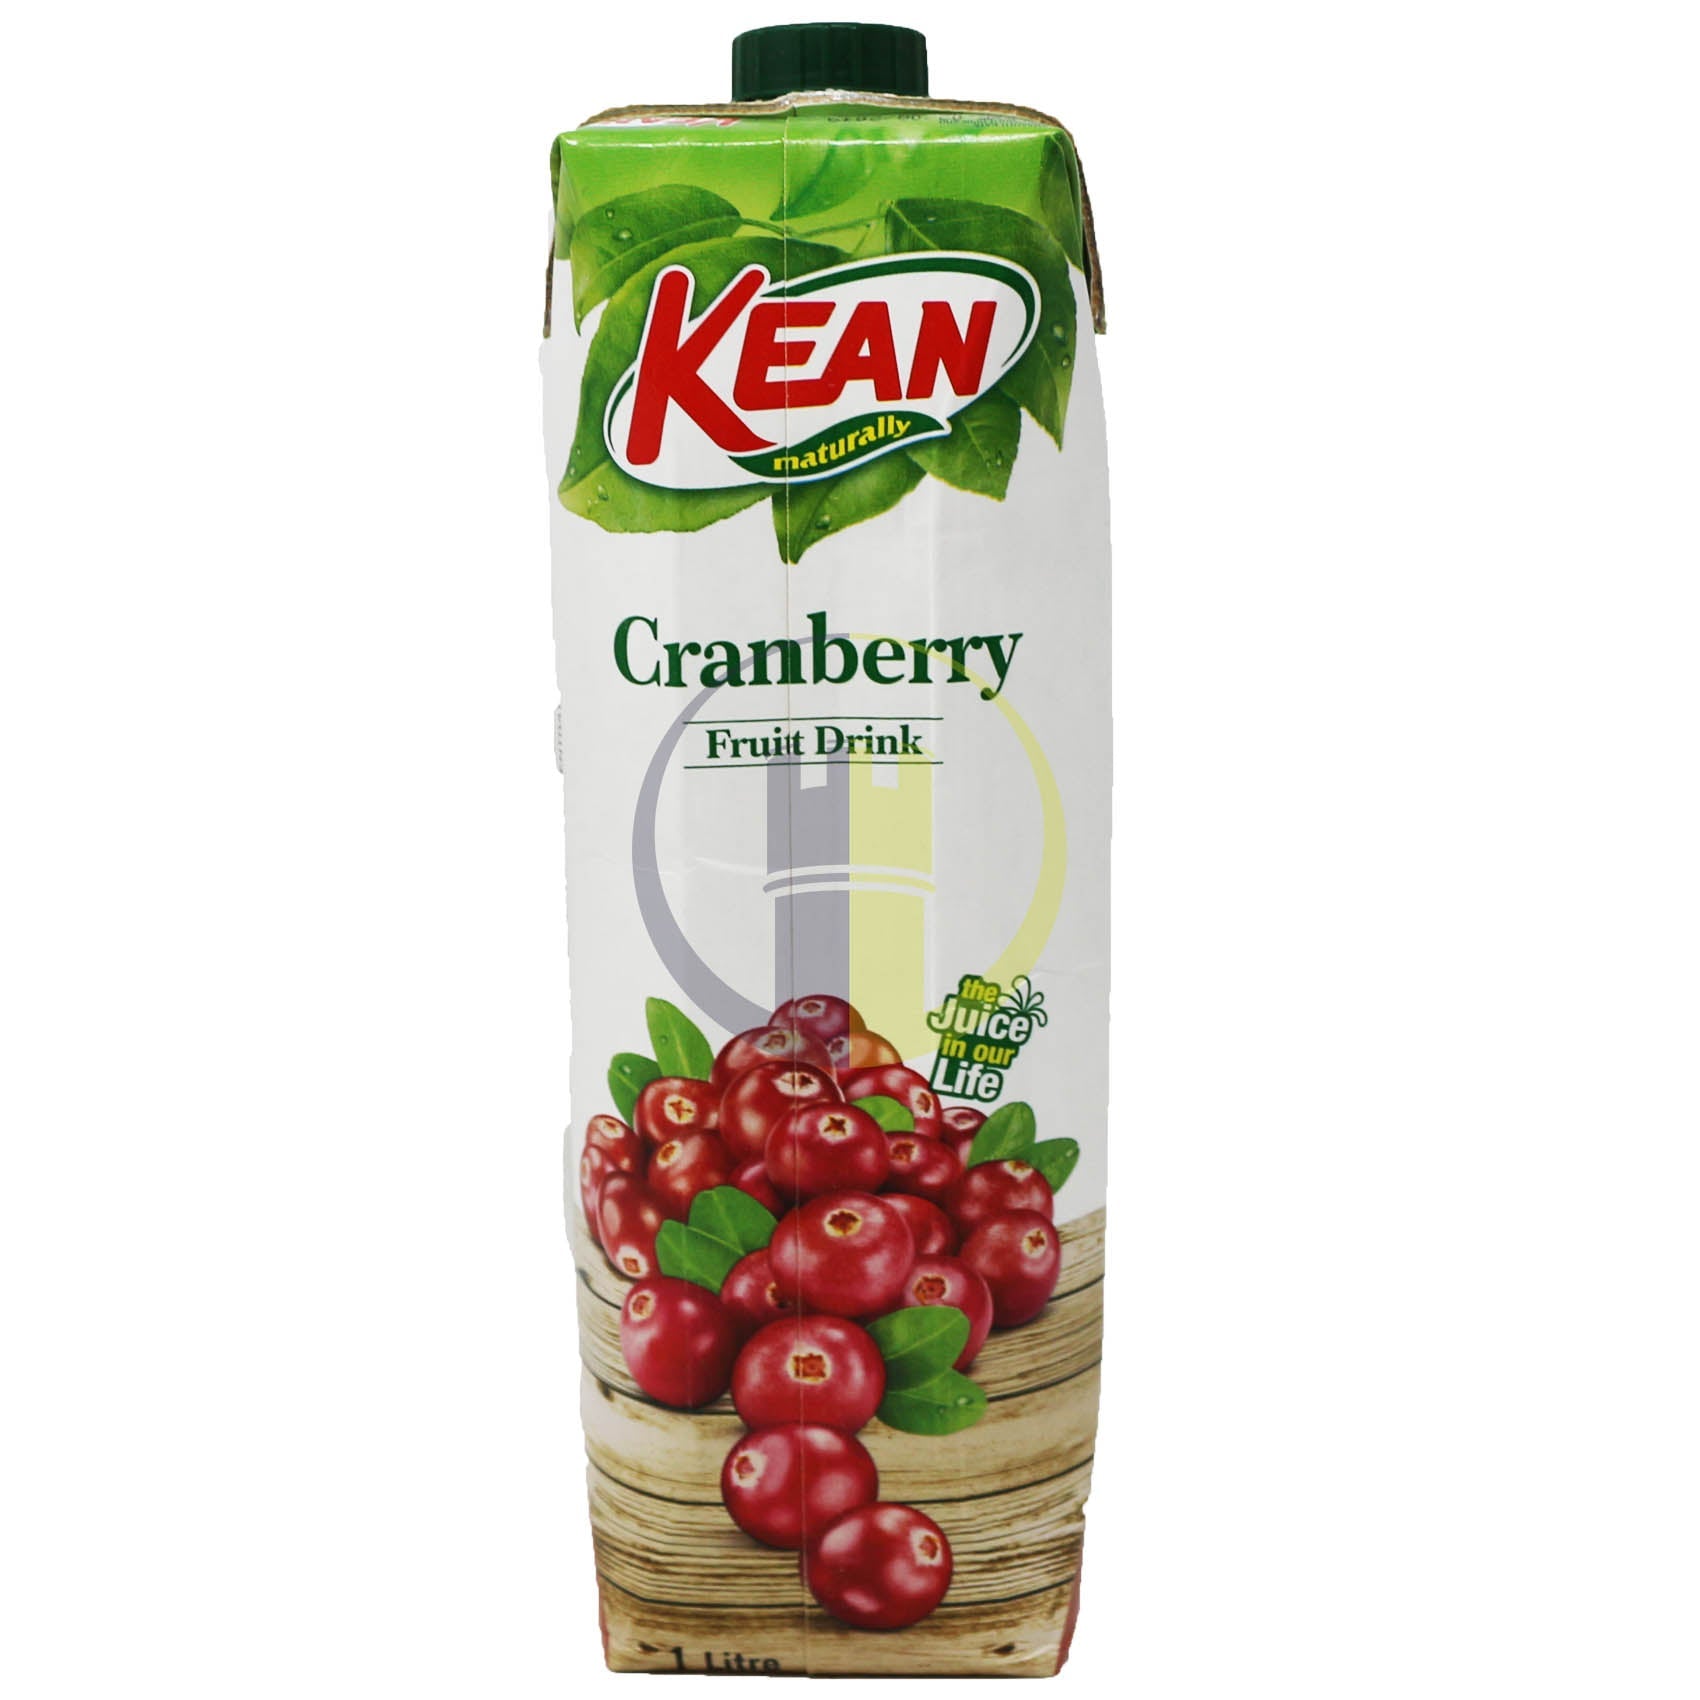 stm>Kean Cranberry Juice 1 ltr